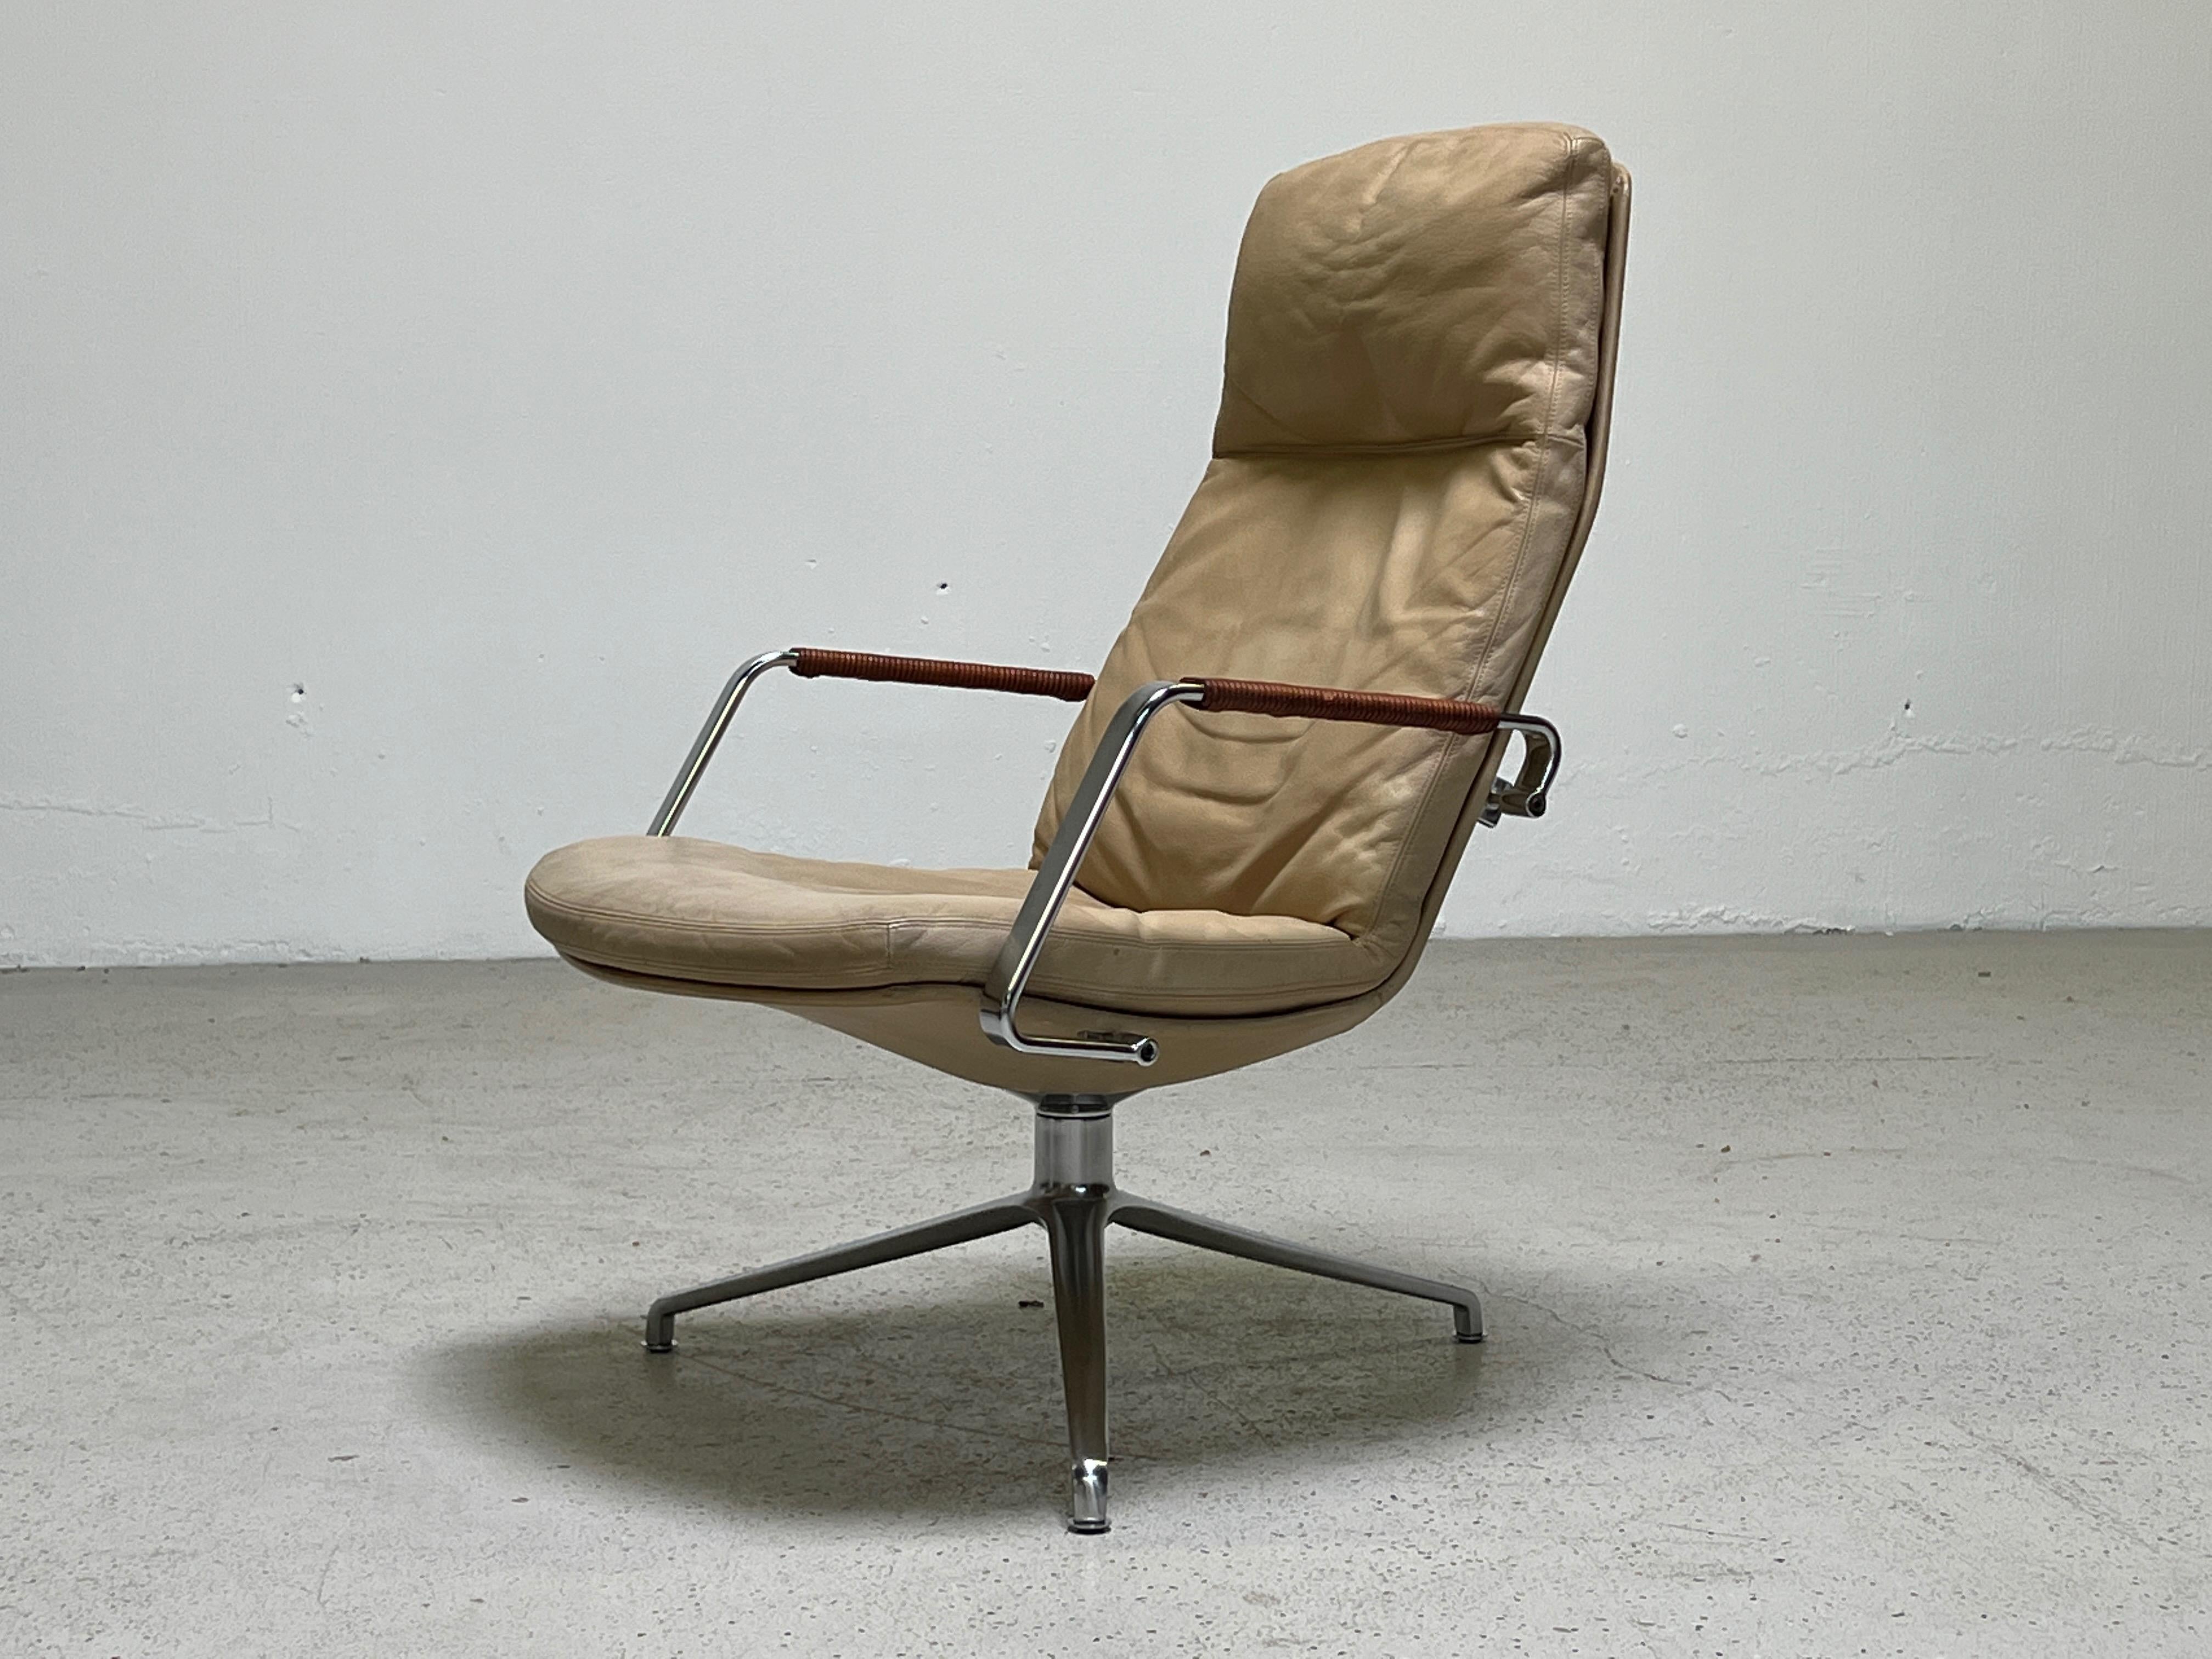 Une chaise longue pivotante FK 86 conçue par Preben Fabricius et Jørgen Kastholm. Cuir ivoire d'origine avec bras gainés de cuir.